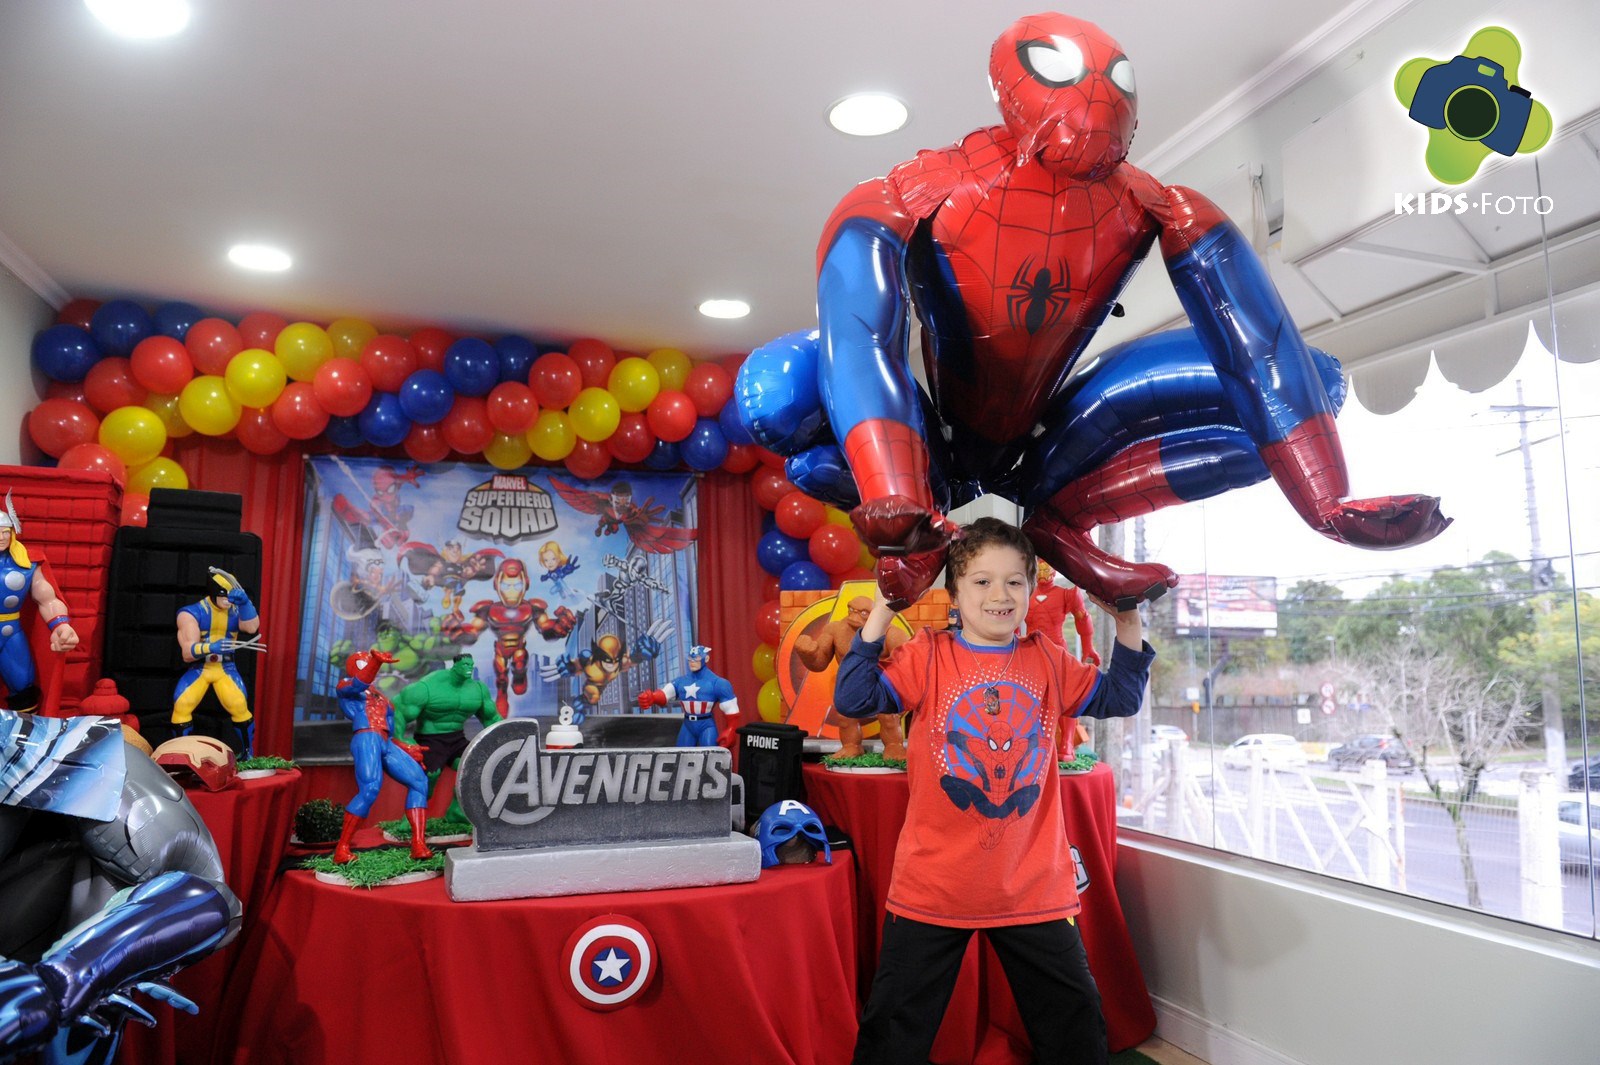 Festa de aniversário de 8 anos do Lucas, realizada no Brincalhão, por Kids Foto